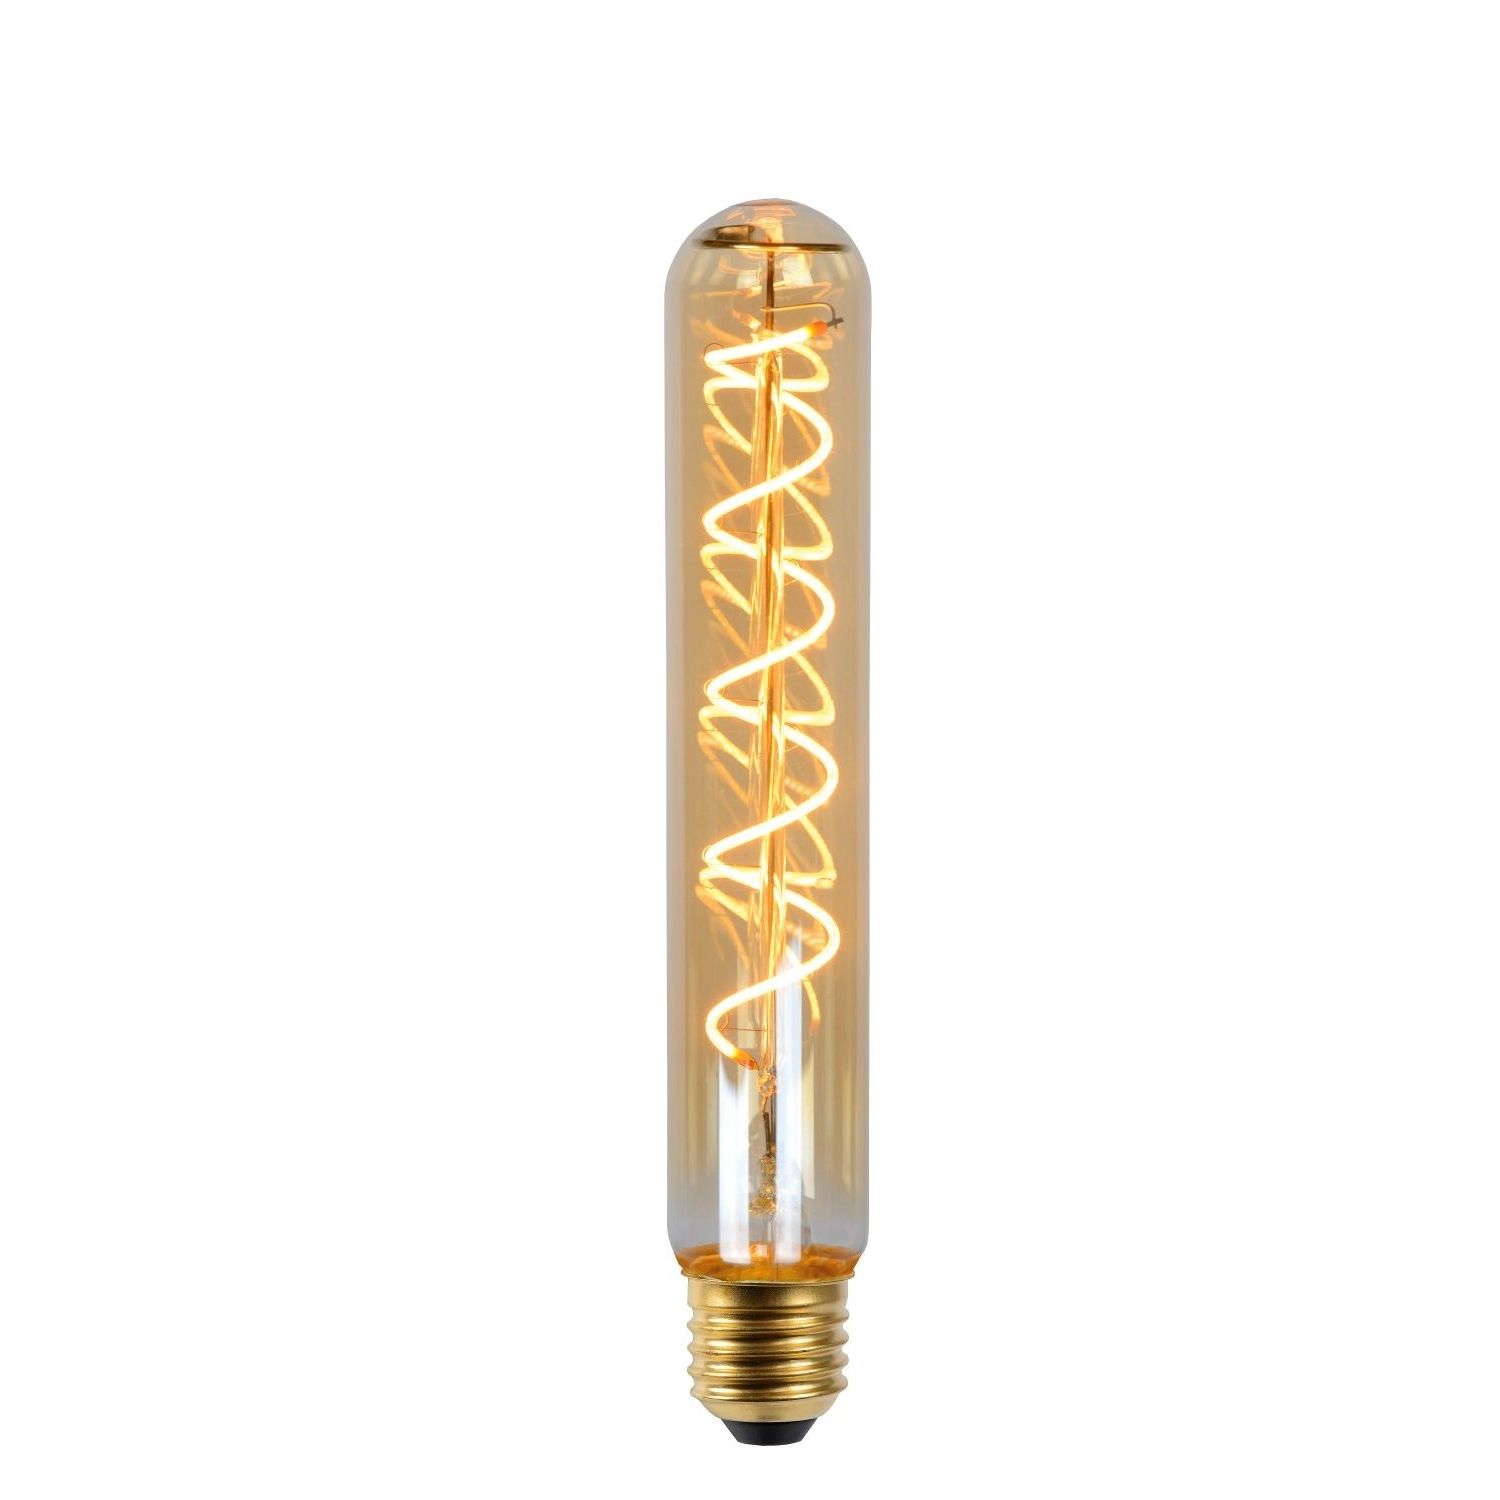 oppakken Landgoed Verandering Lucide LED filament lamp -Ø 3,2 x 20 cm - E27 - 5W dimbaar - 2200K -amber |  Lichtkoning